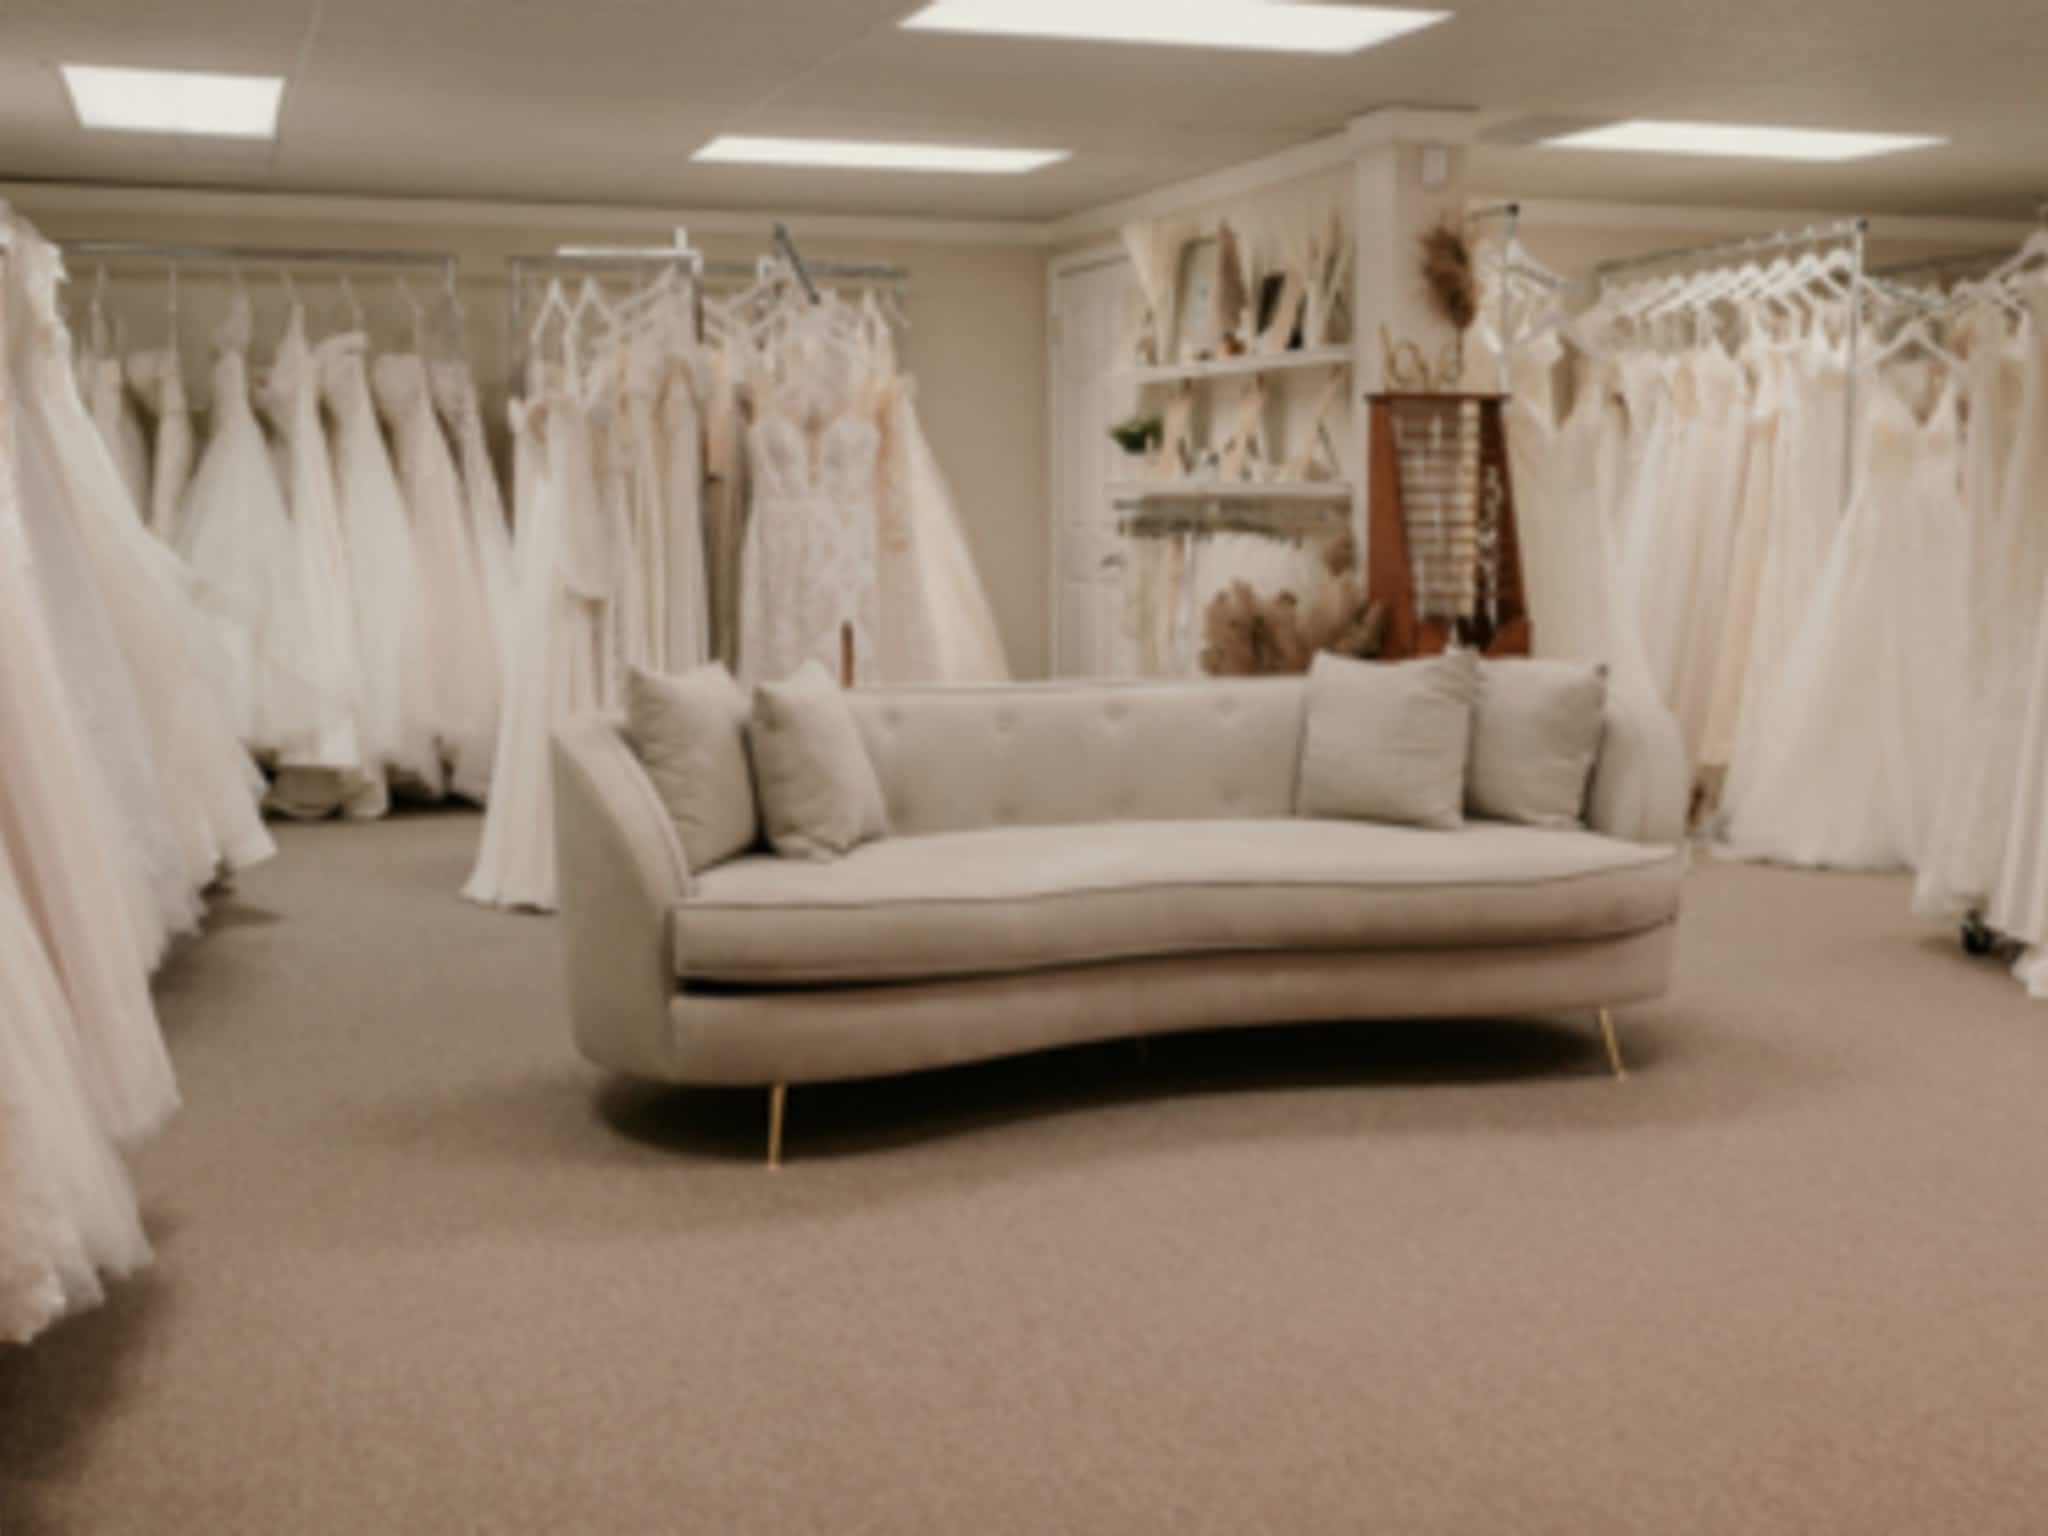 photo Lindgren's Boutique & Bridal Salon